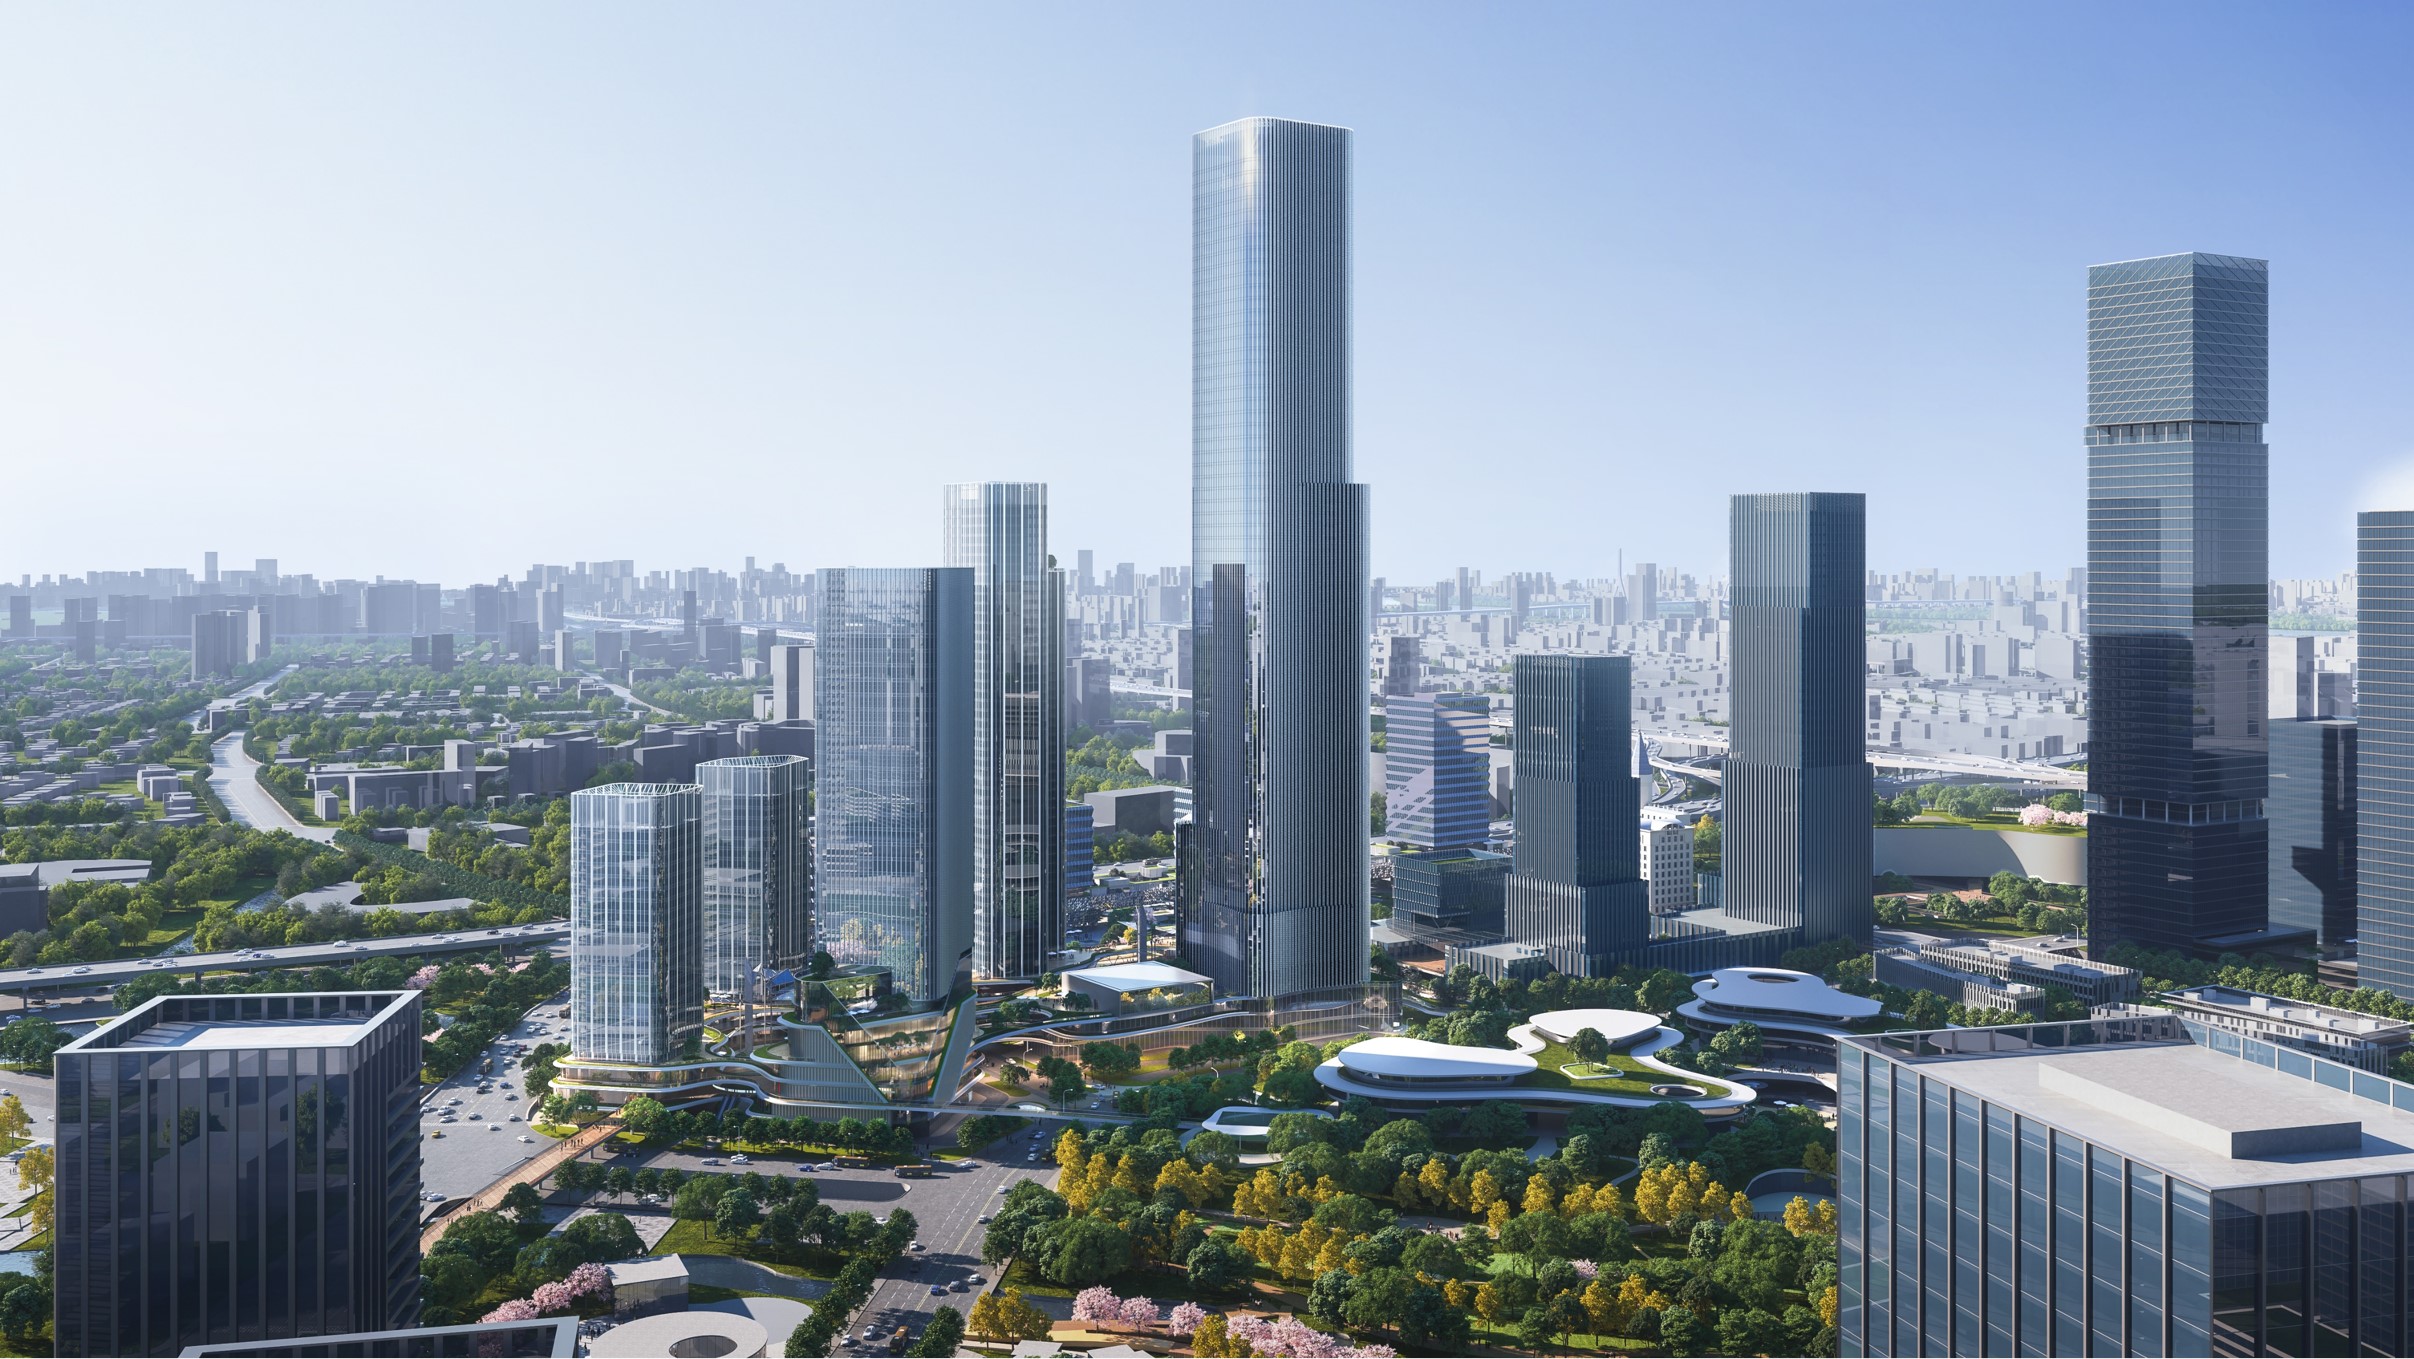 上海金桥经济技术开发区转型发展的路径思考|上海城市规划 - 规划头条|规划早读